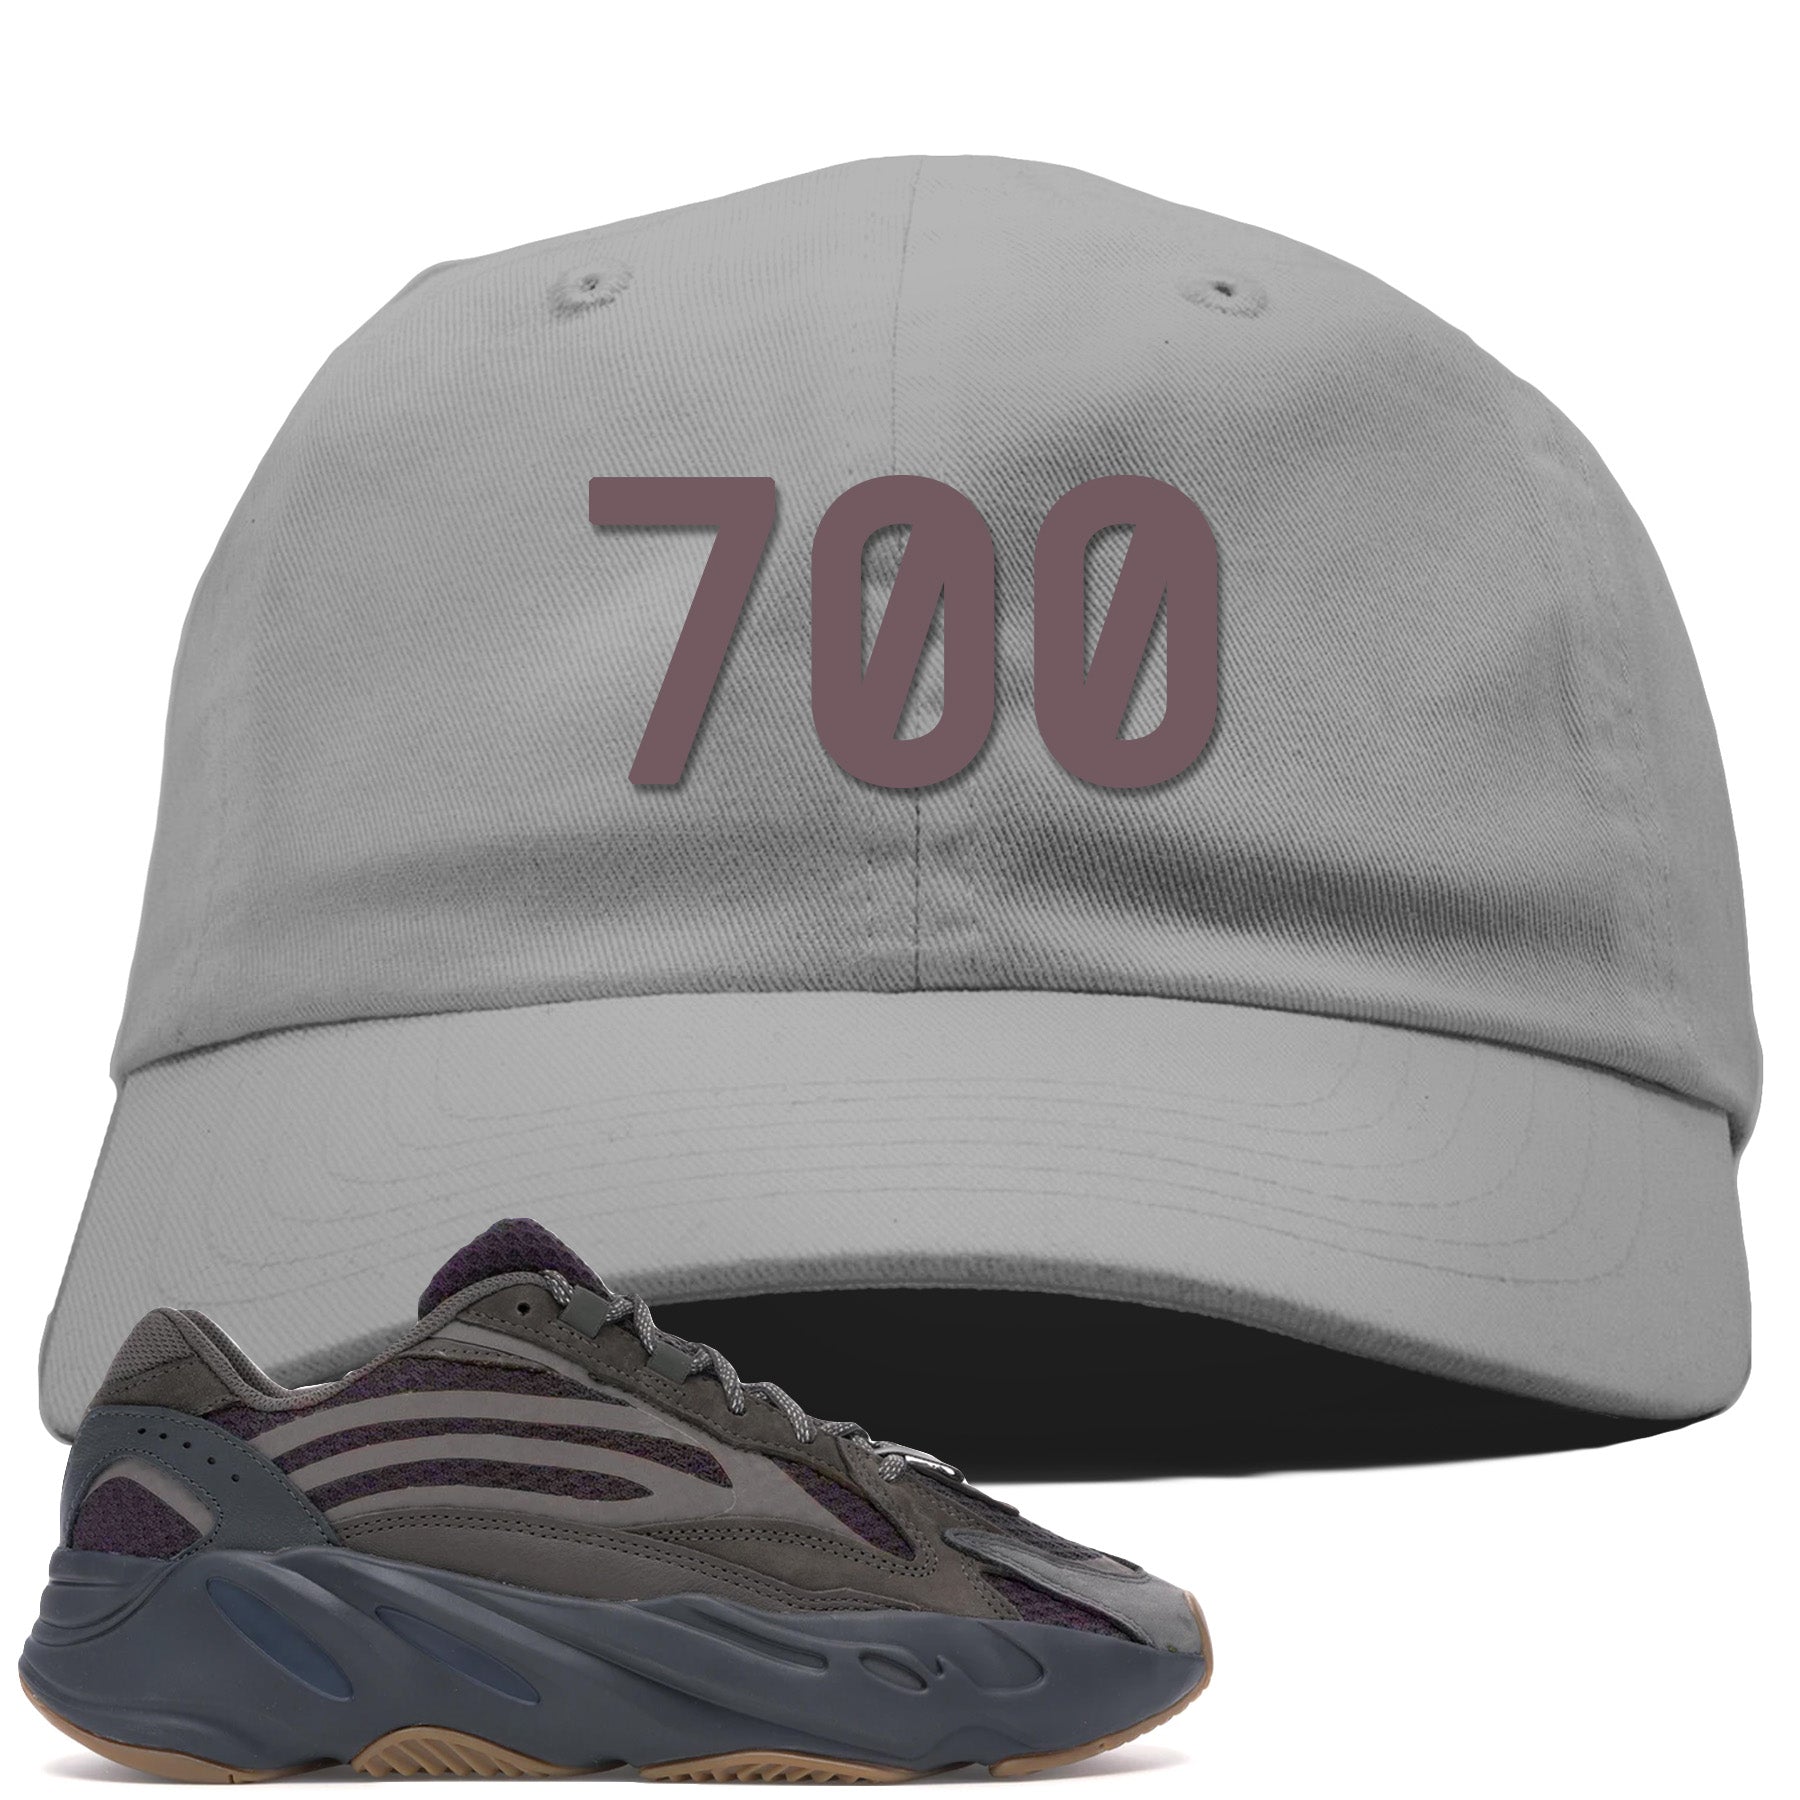 yeezy 700 hat